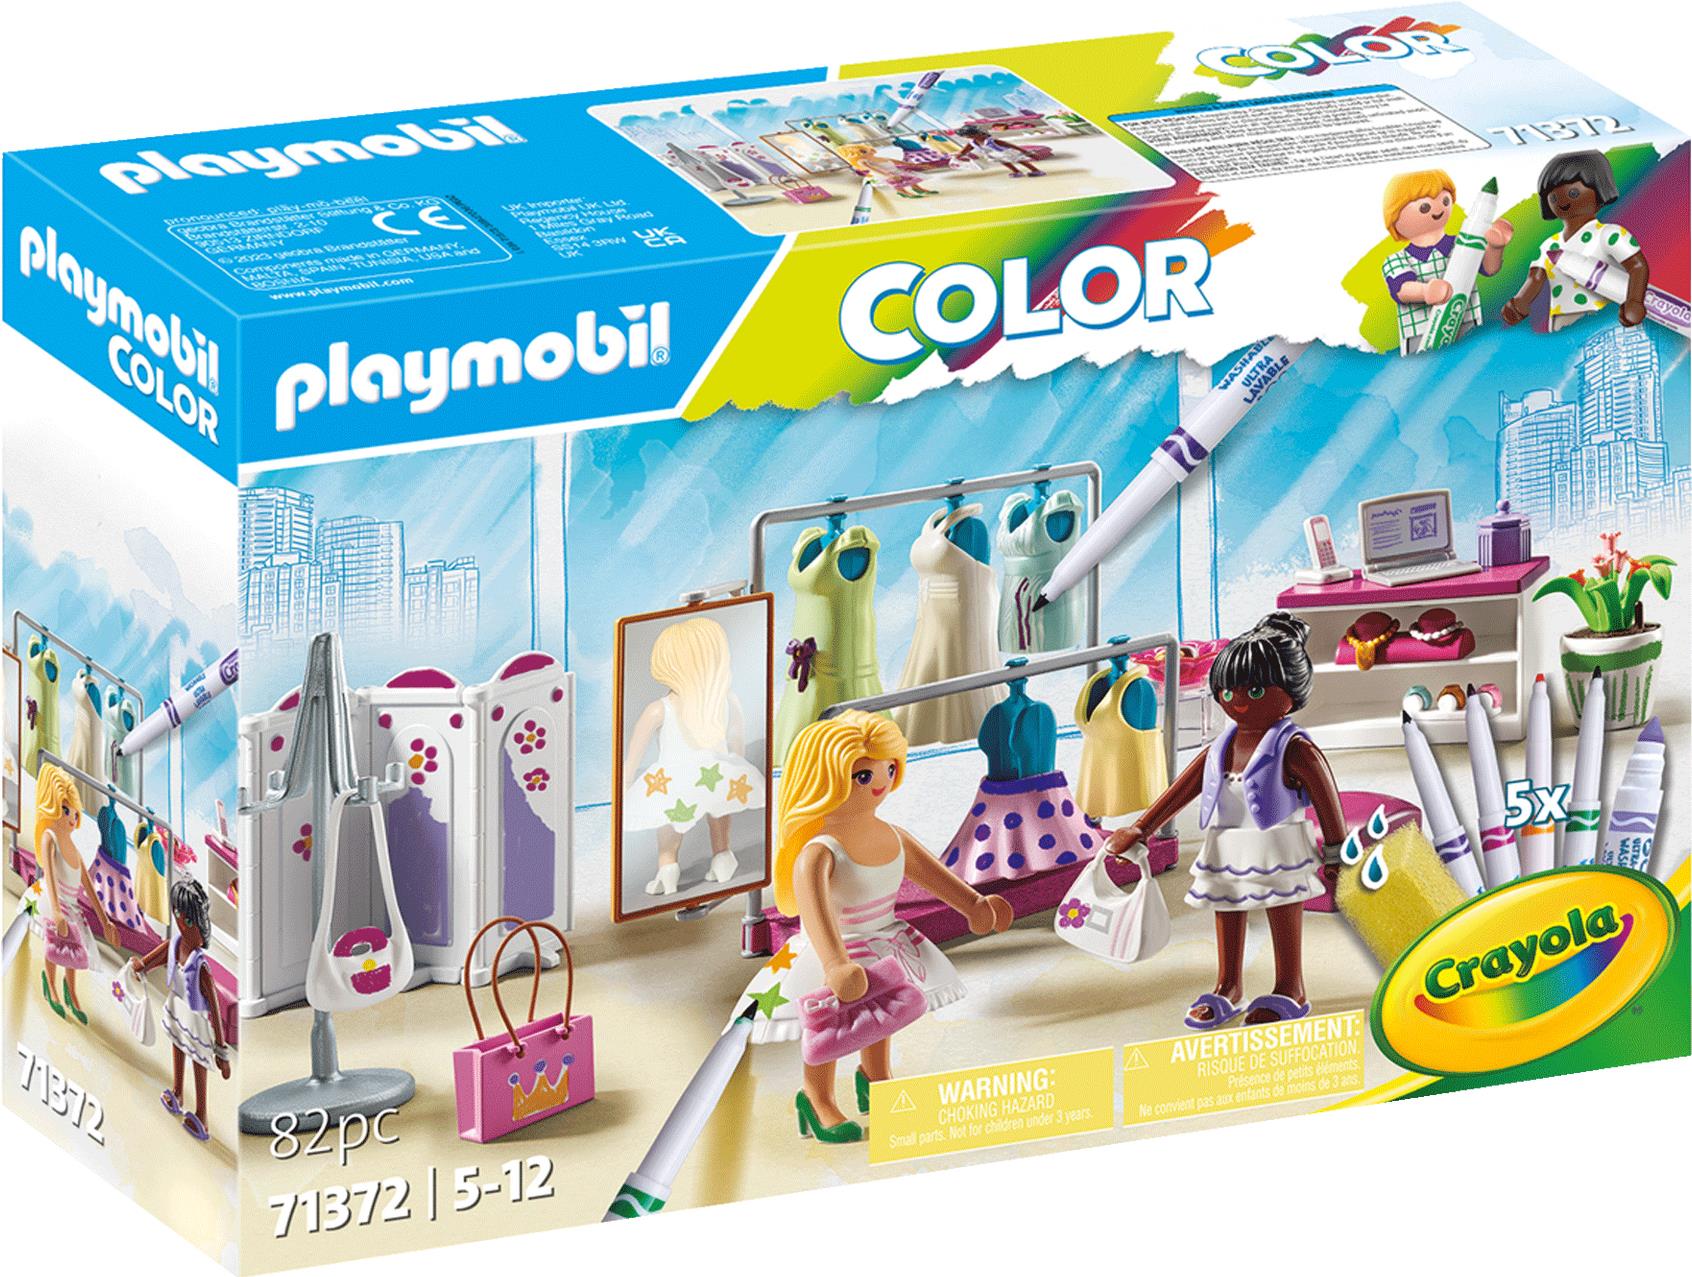 Playmobil Color: Fashionboutique